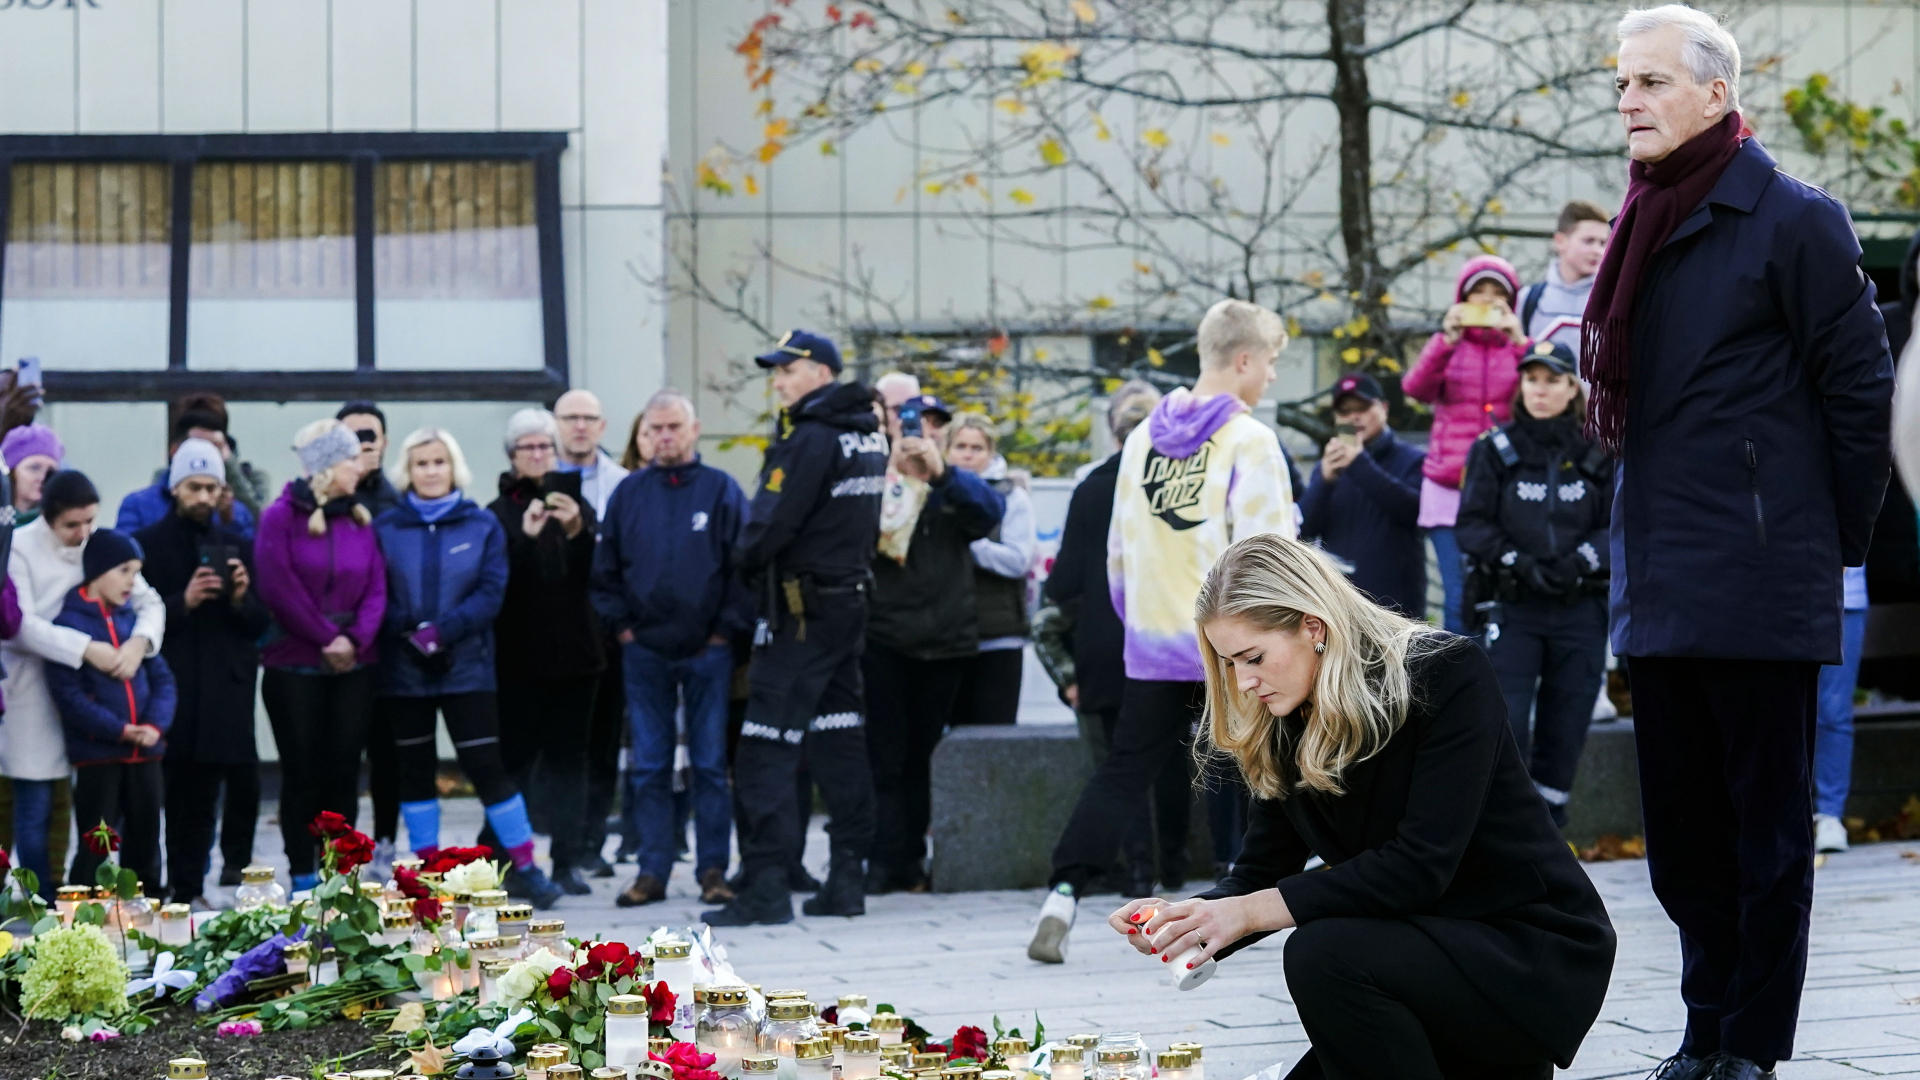 Jonas Gahr Støre (r), Ministerpräsident von Norwegen, und Emilie Enger Mehl (2.v.r), Justizministerin von Norwegen, legen bei ihrem Besuch in Kongsberg Blumen für die Opfer eines Attentats nieder und zünden Kerzen an. | dpa